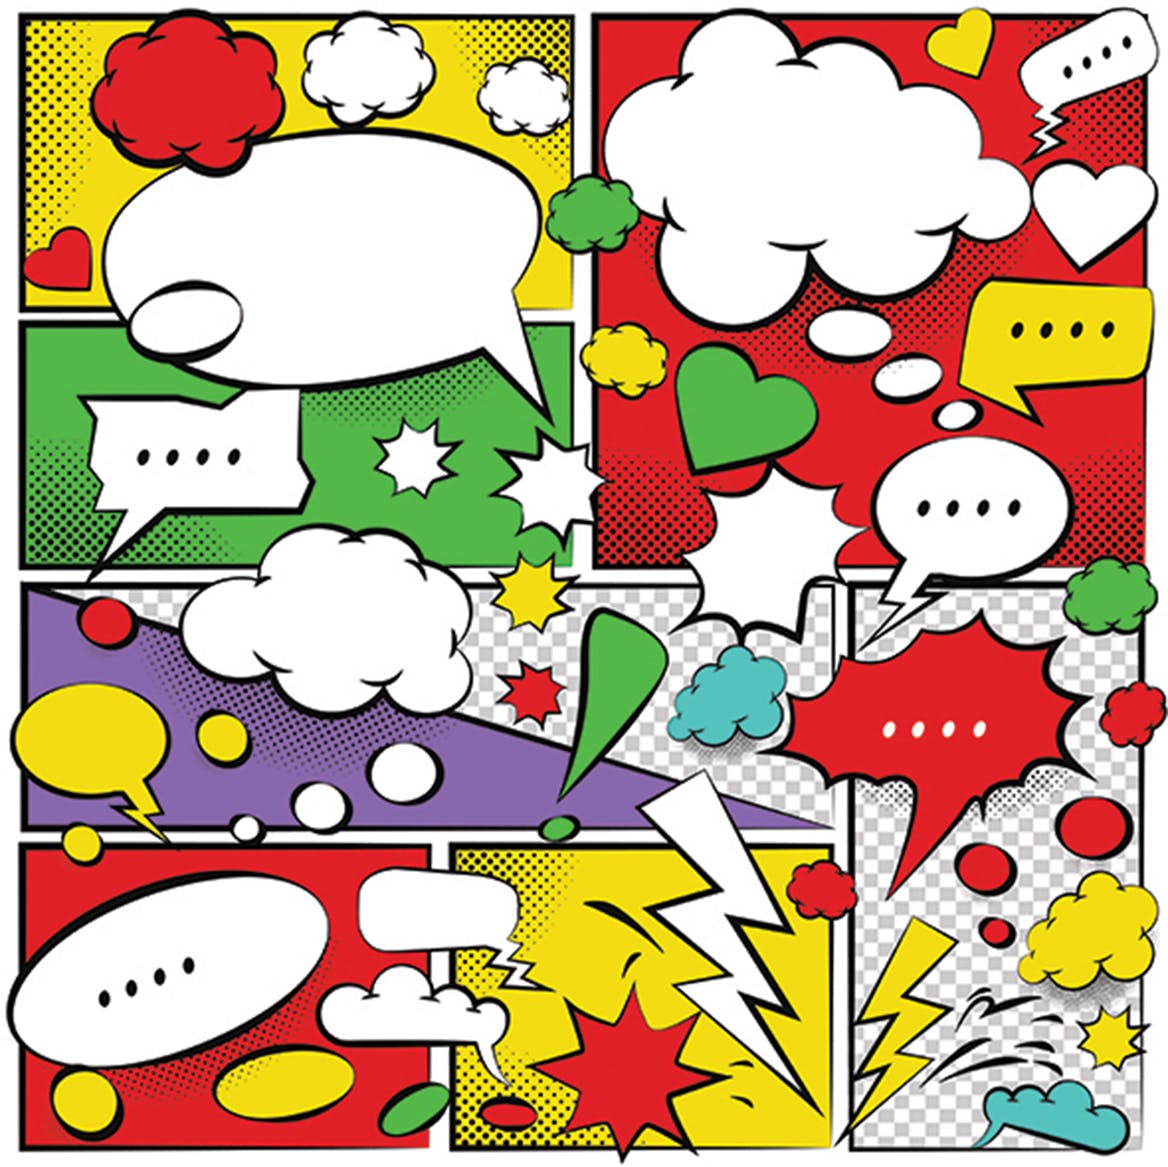 美式动漫对话泡泡框手绘图形设计素材 Comic Speech Bubbles Design插图(1)